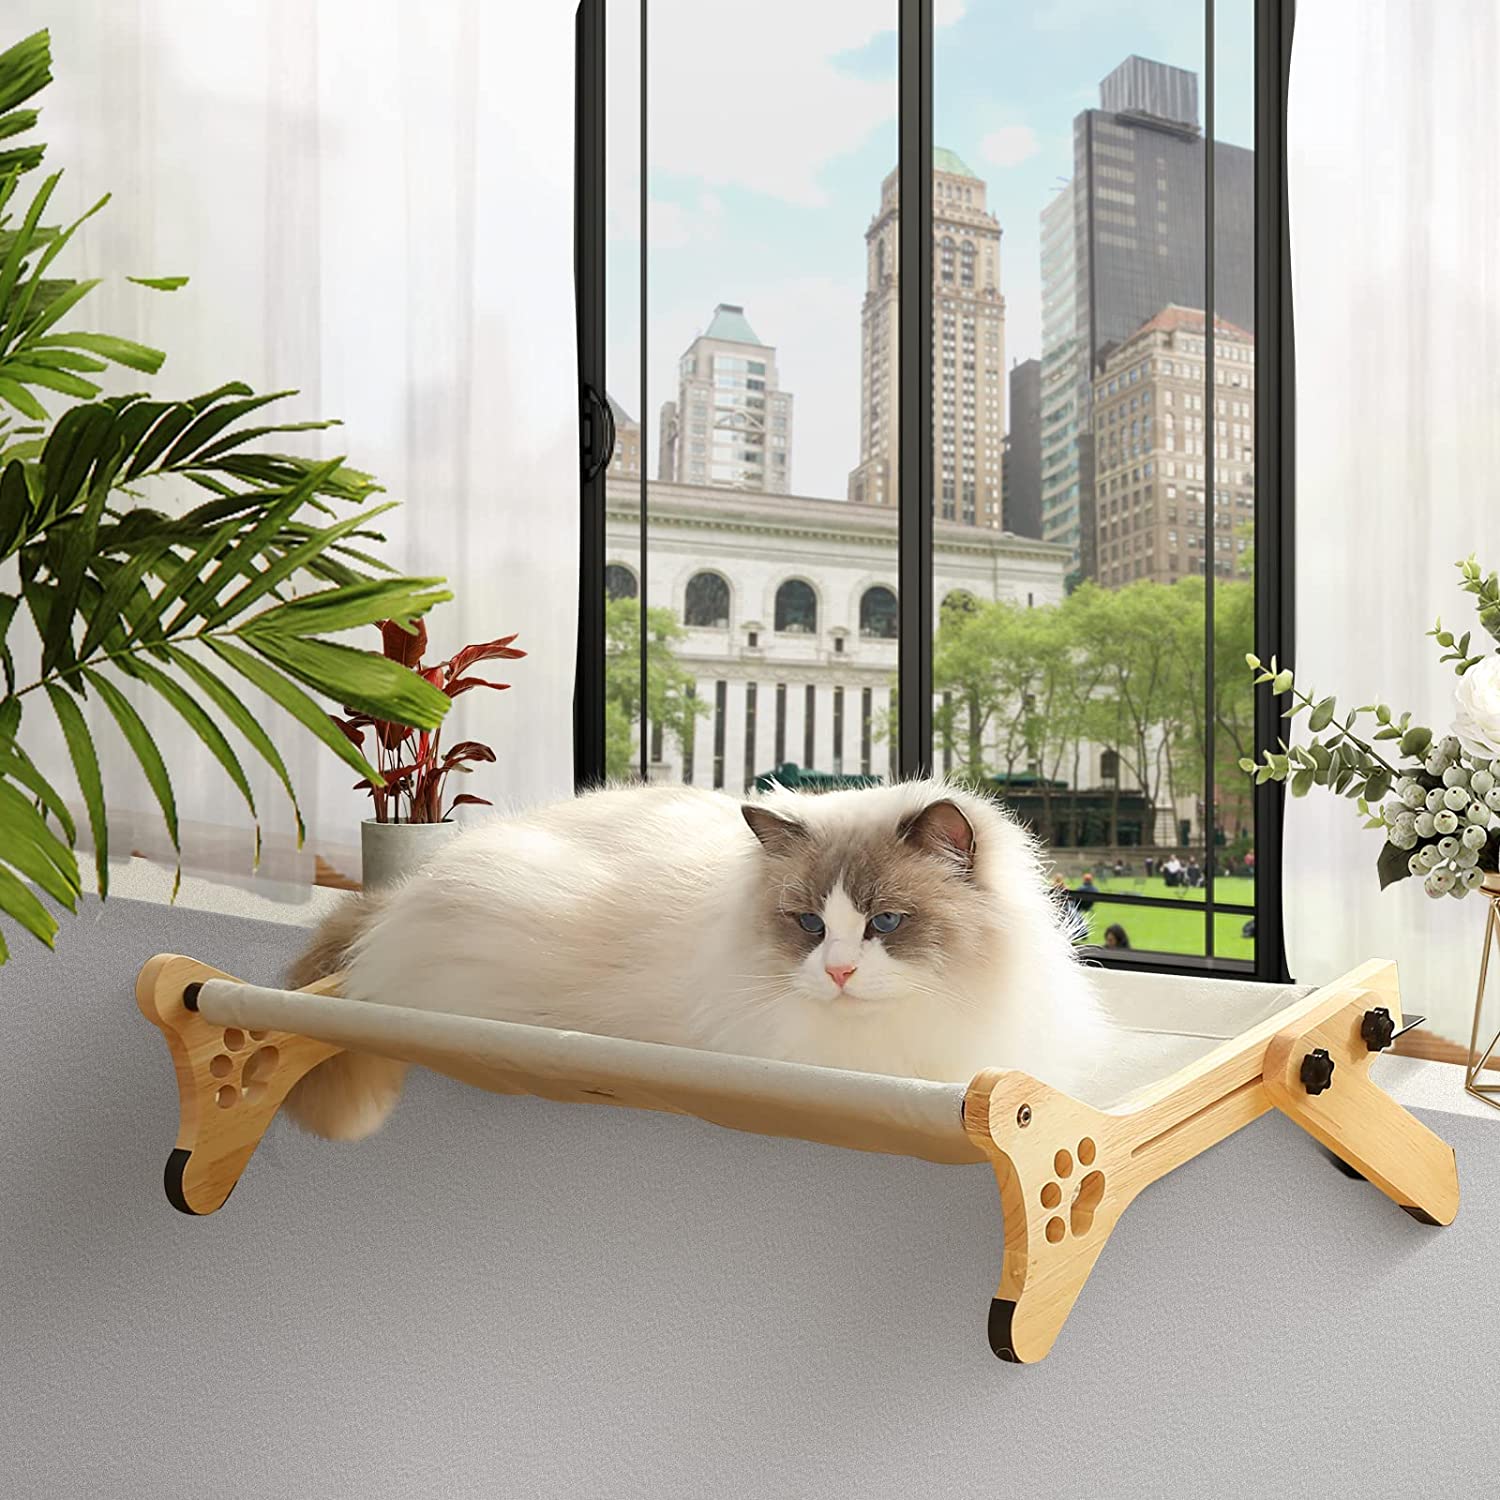 【色: ダークグレー】JUNSPOW 猫ベッド ペットハンモック 犬猫用ベッド